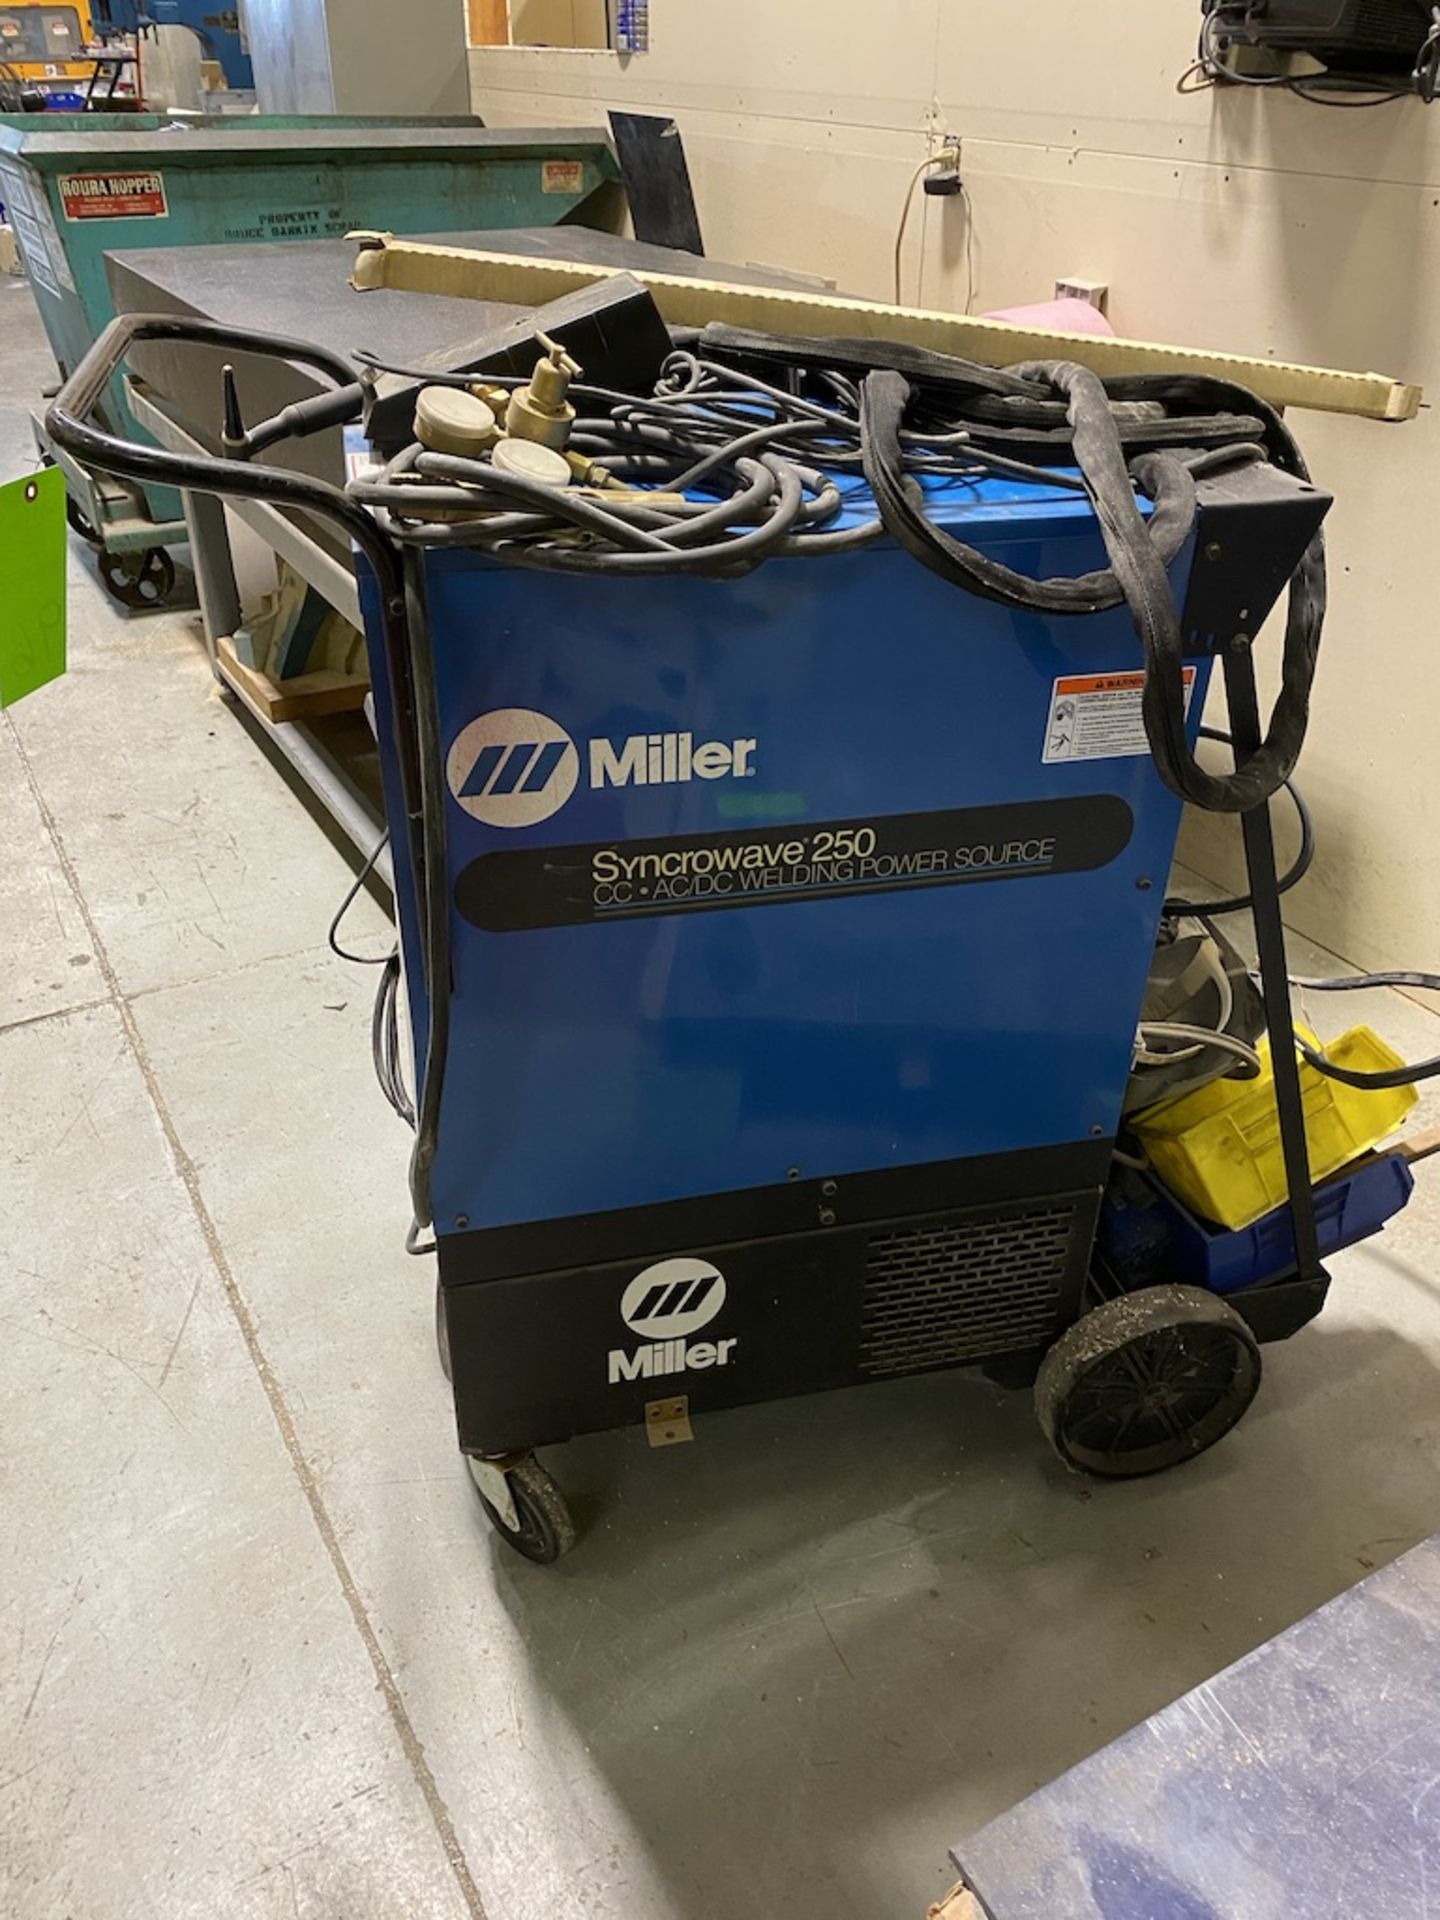 Miller Syncrowave 250 portable welder - Image 2 of 2